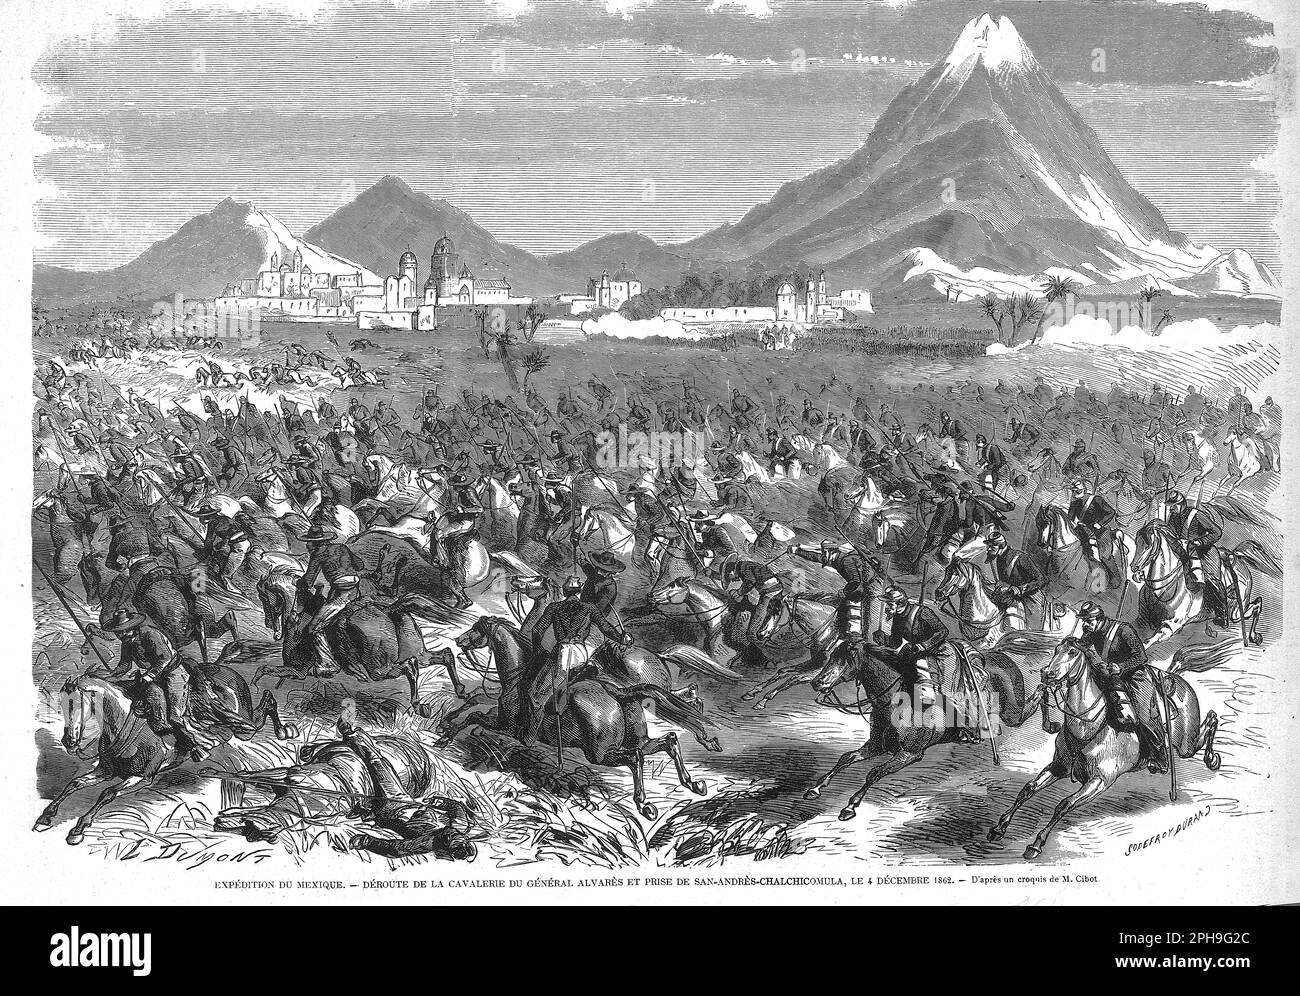 prise de San Andrès Chalchicomula le 4 décembre 1862 au Mexique Stock Photo